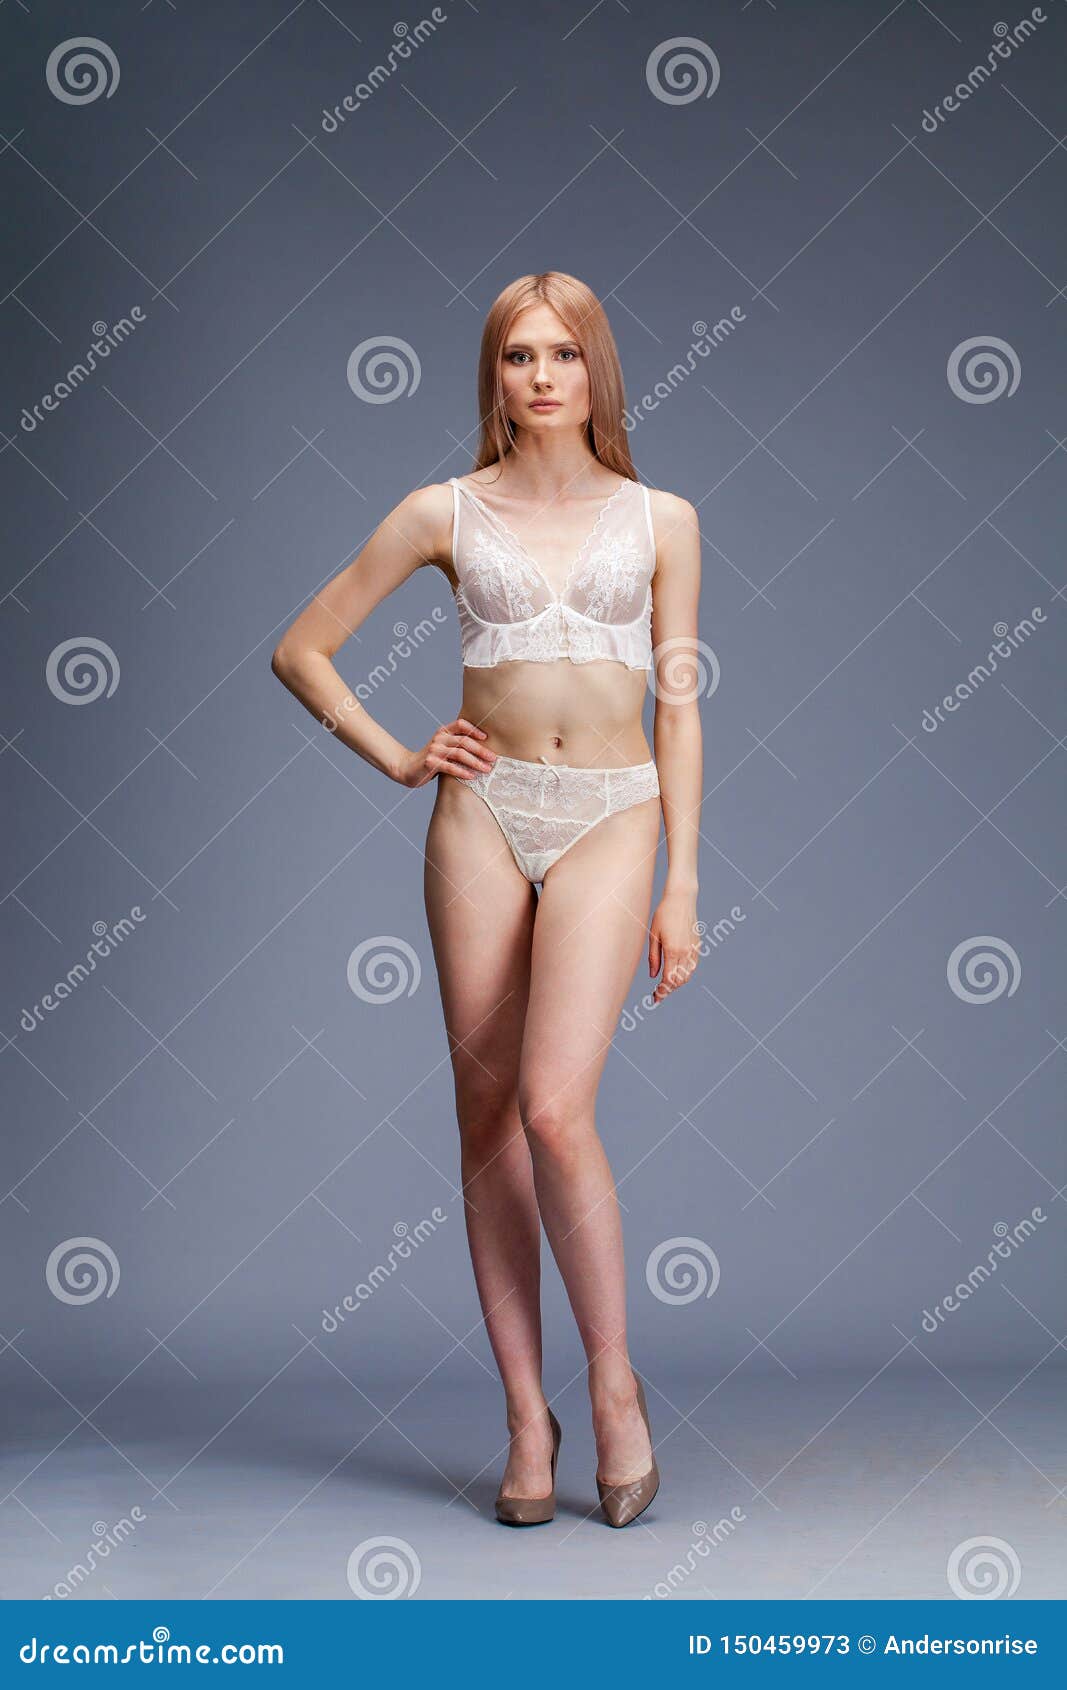 white lingeries model 19,880 White Lingerie Model Photos - Free & Royalty-Free ...